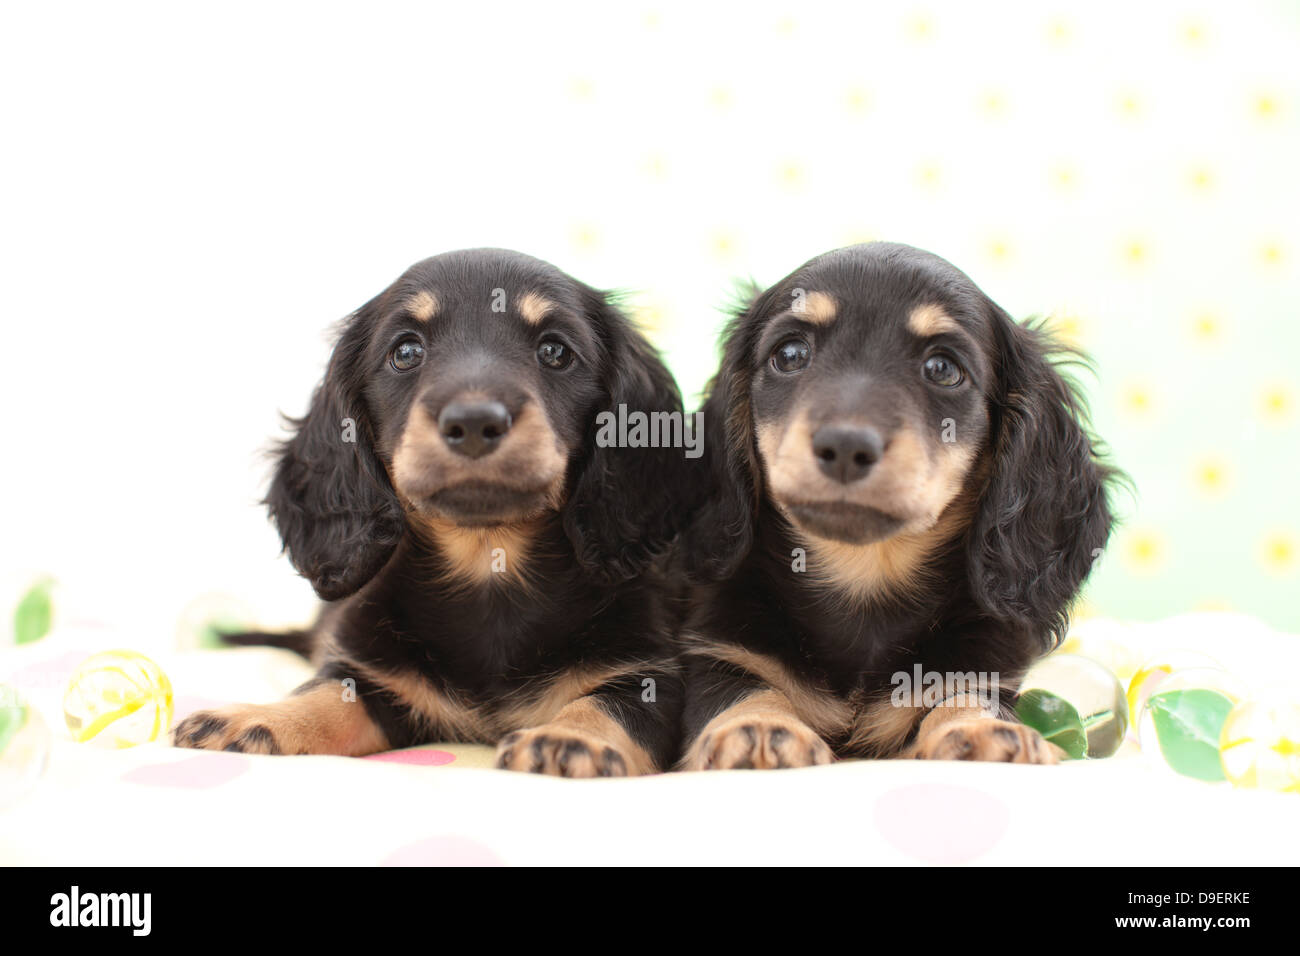 Miniature Dachshund pets Stock Photo